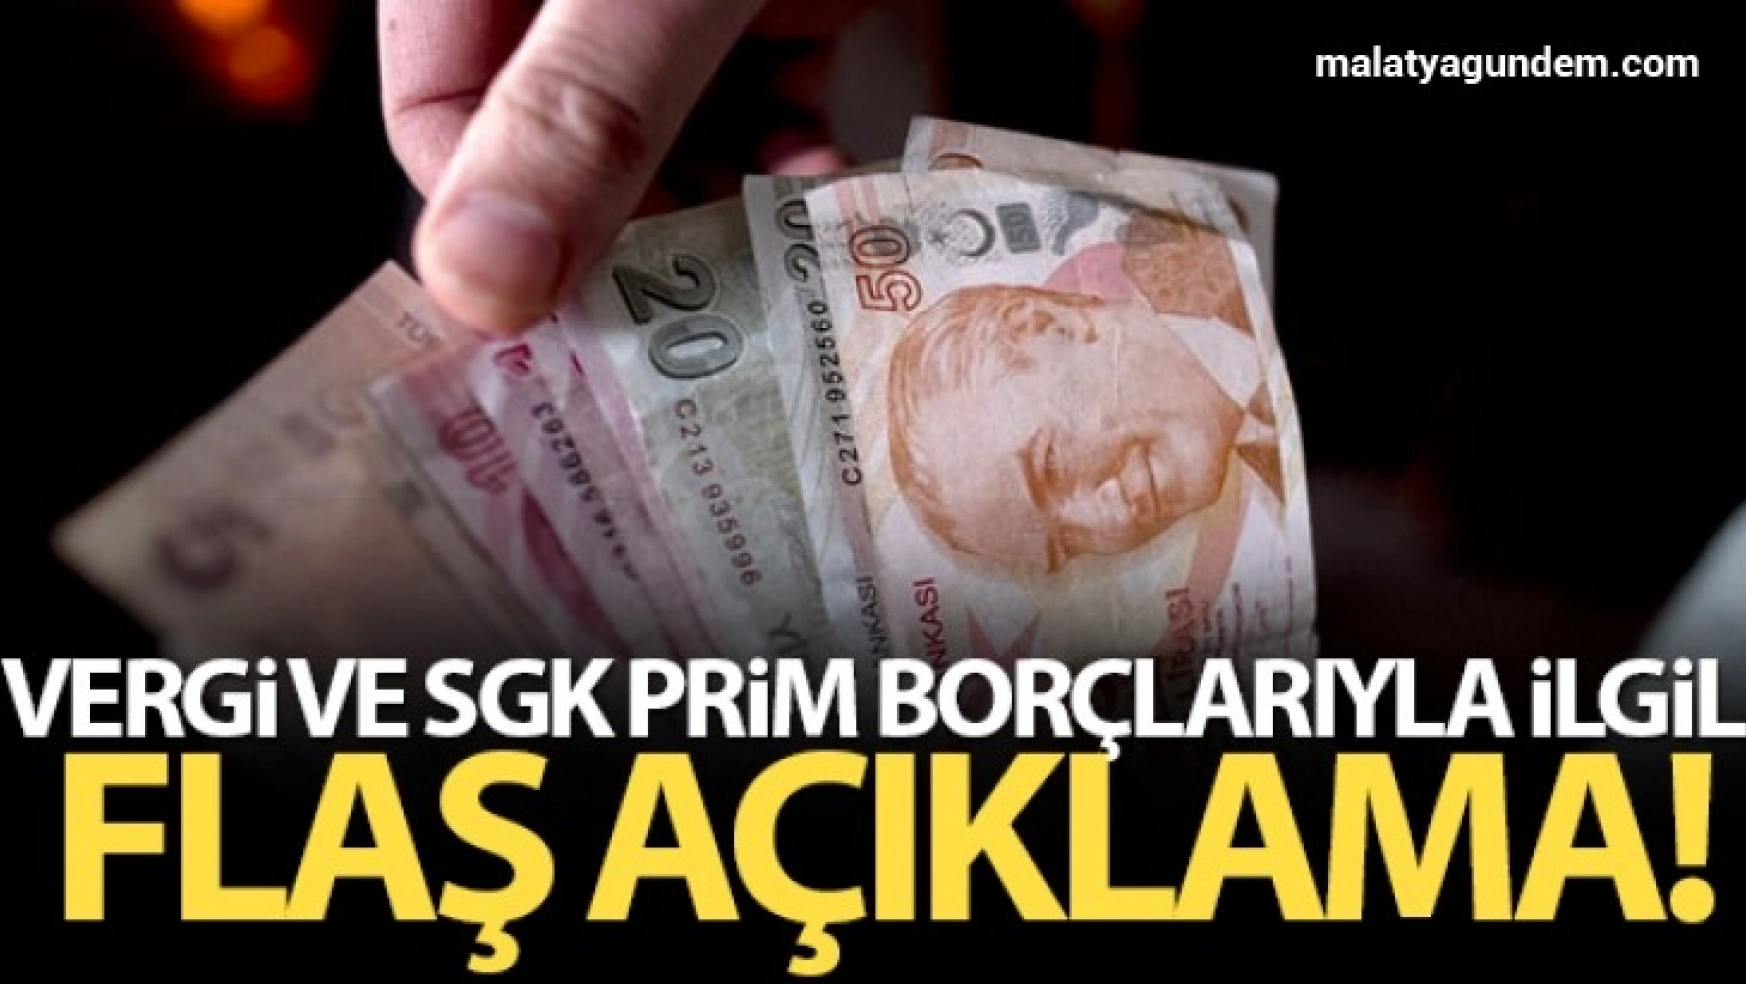 AK Partili Muş: 'Vergi ve SGK prim borçlarının yapılandırılmasıyla alakalı bir çalışmamız var'